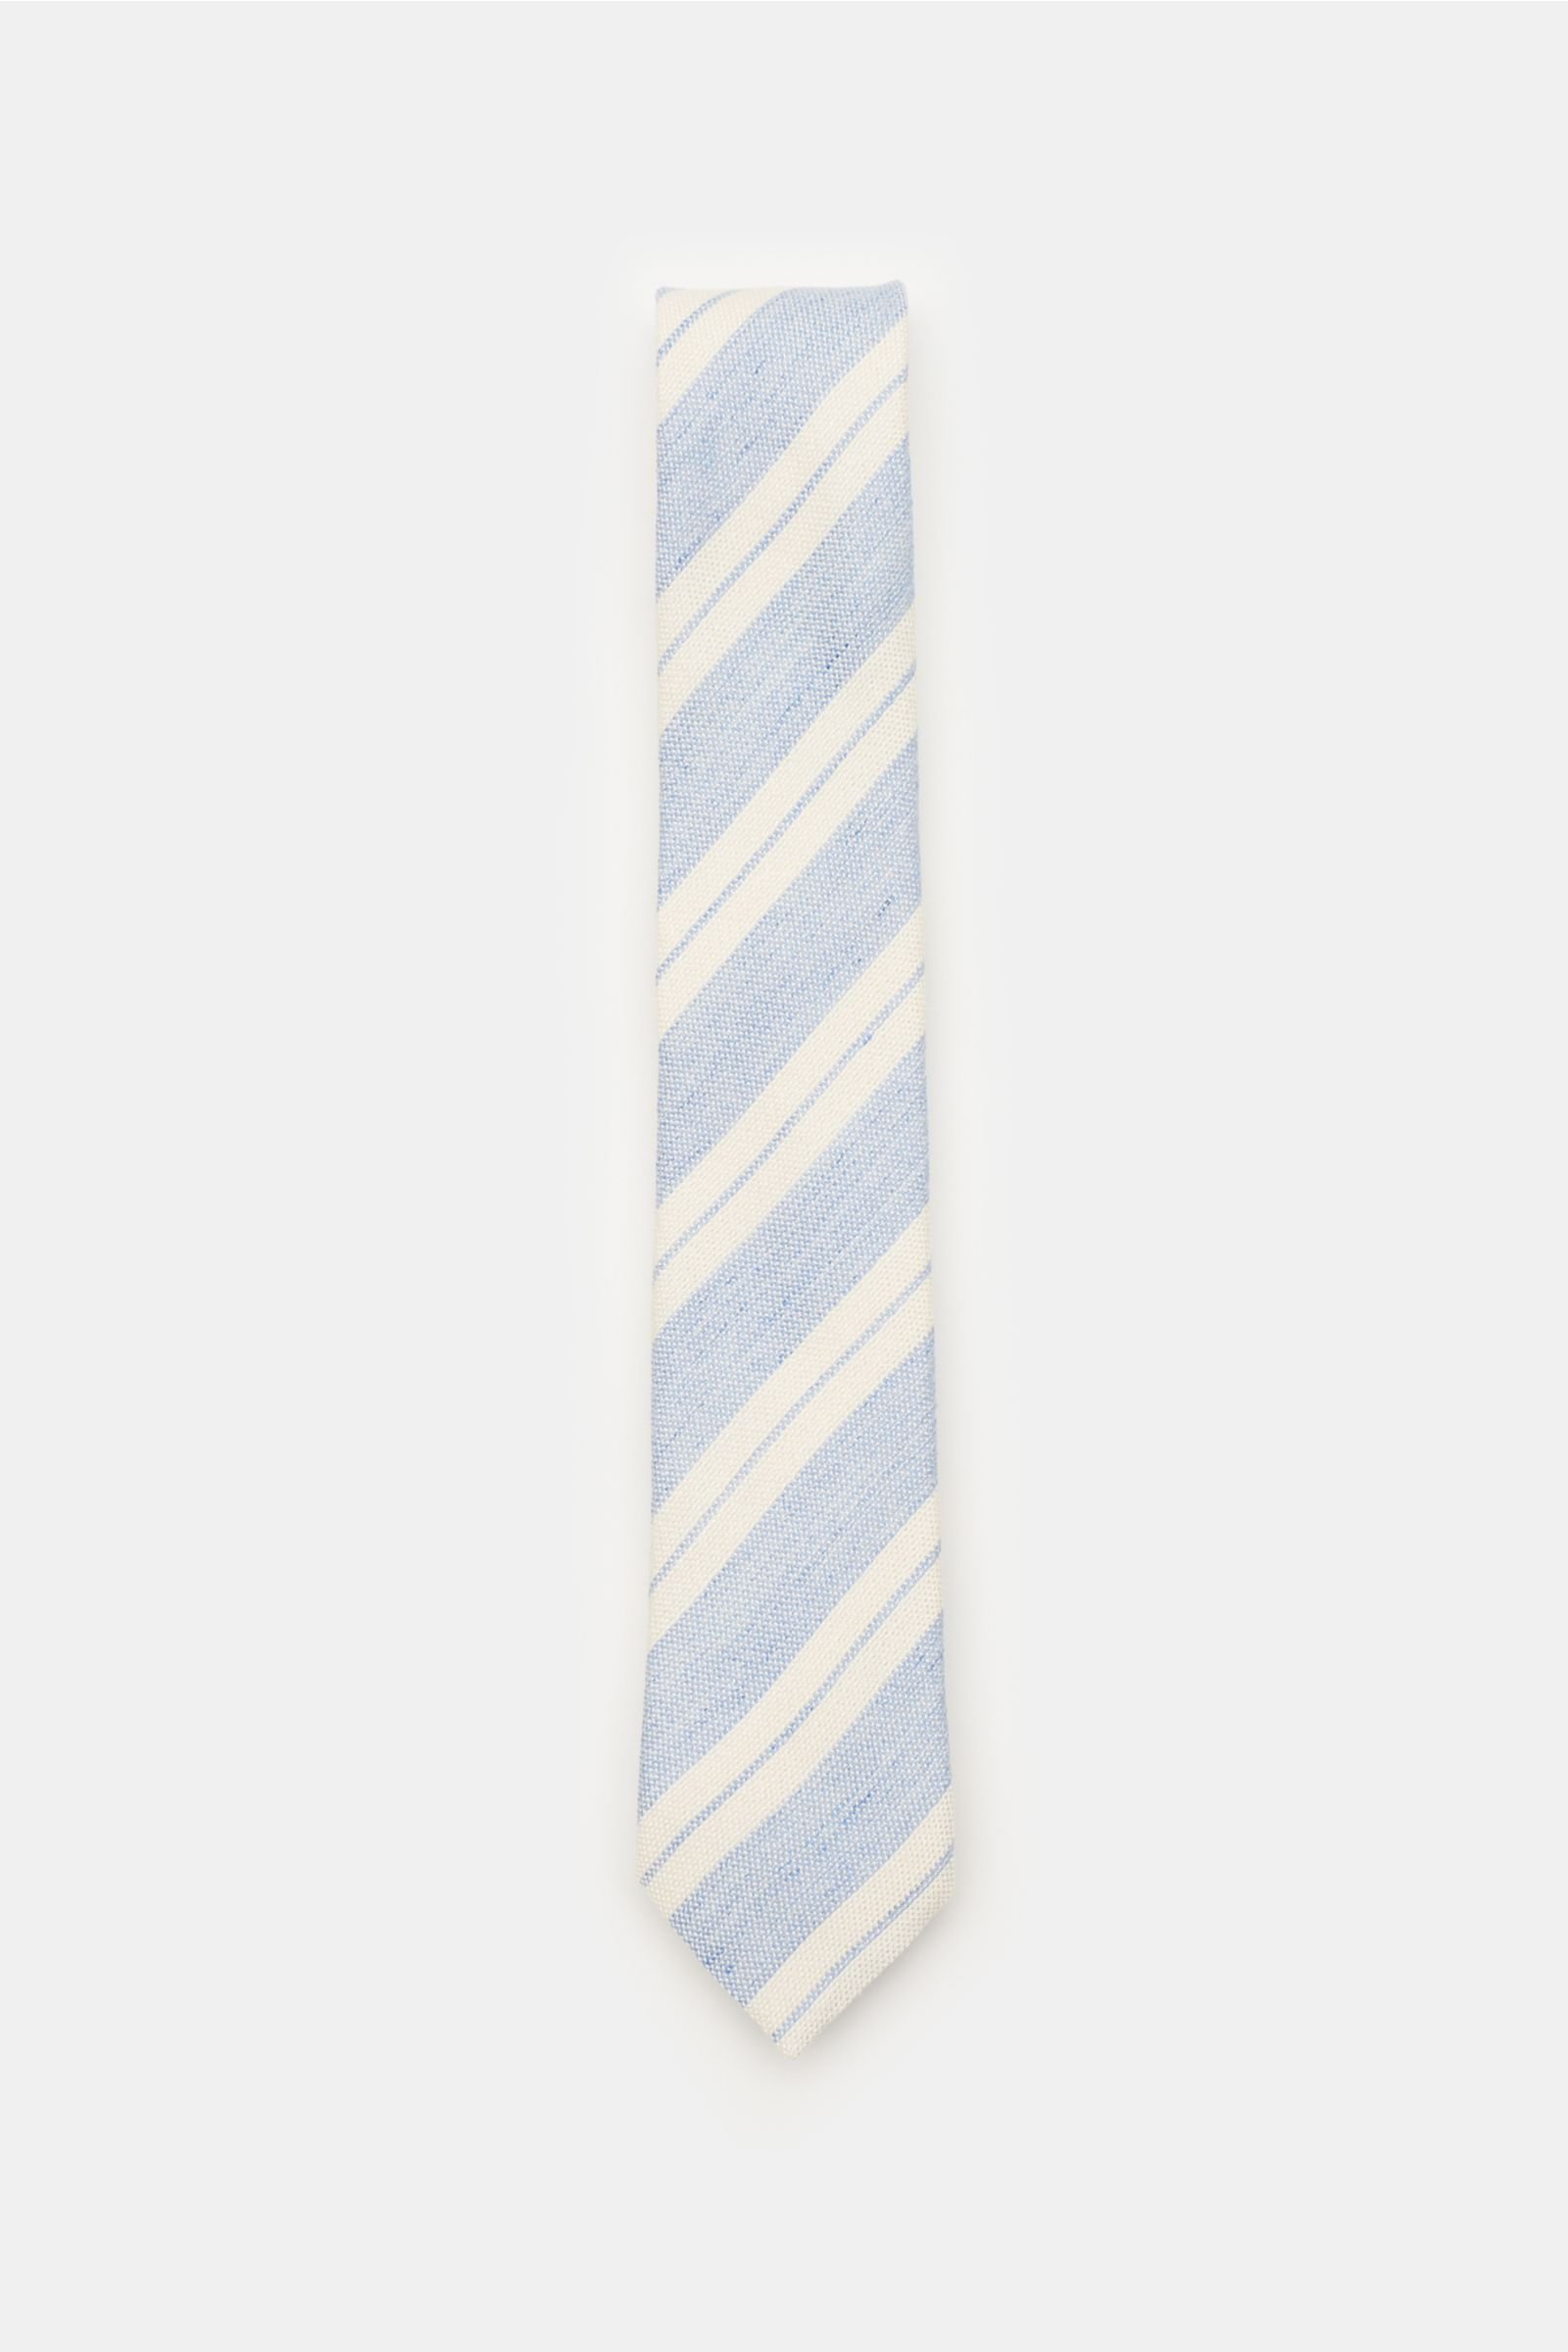 Krawatte hellblau/creme gestreift